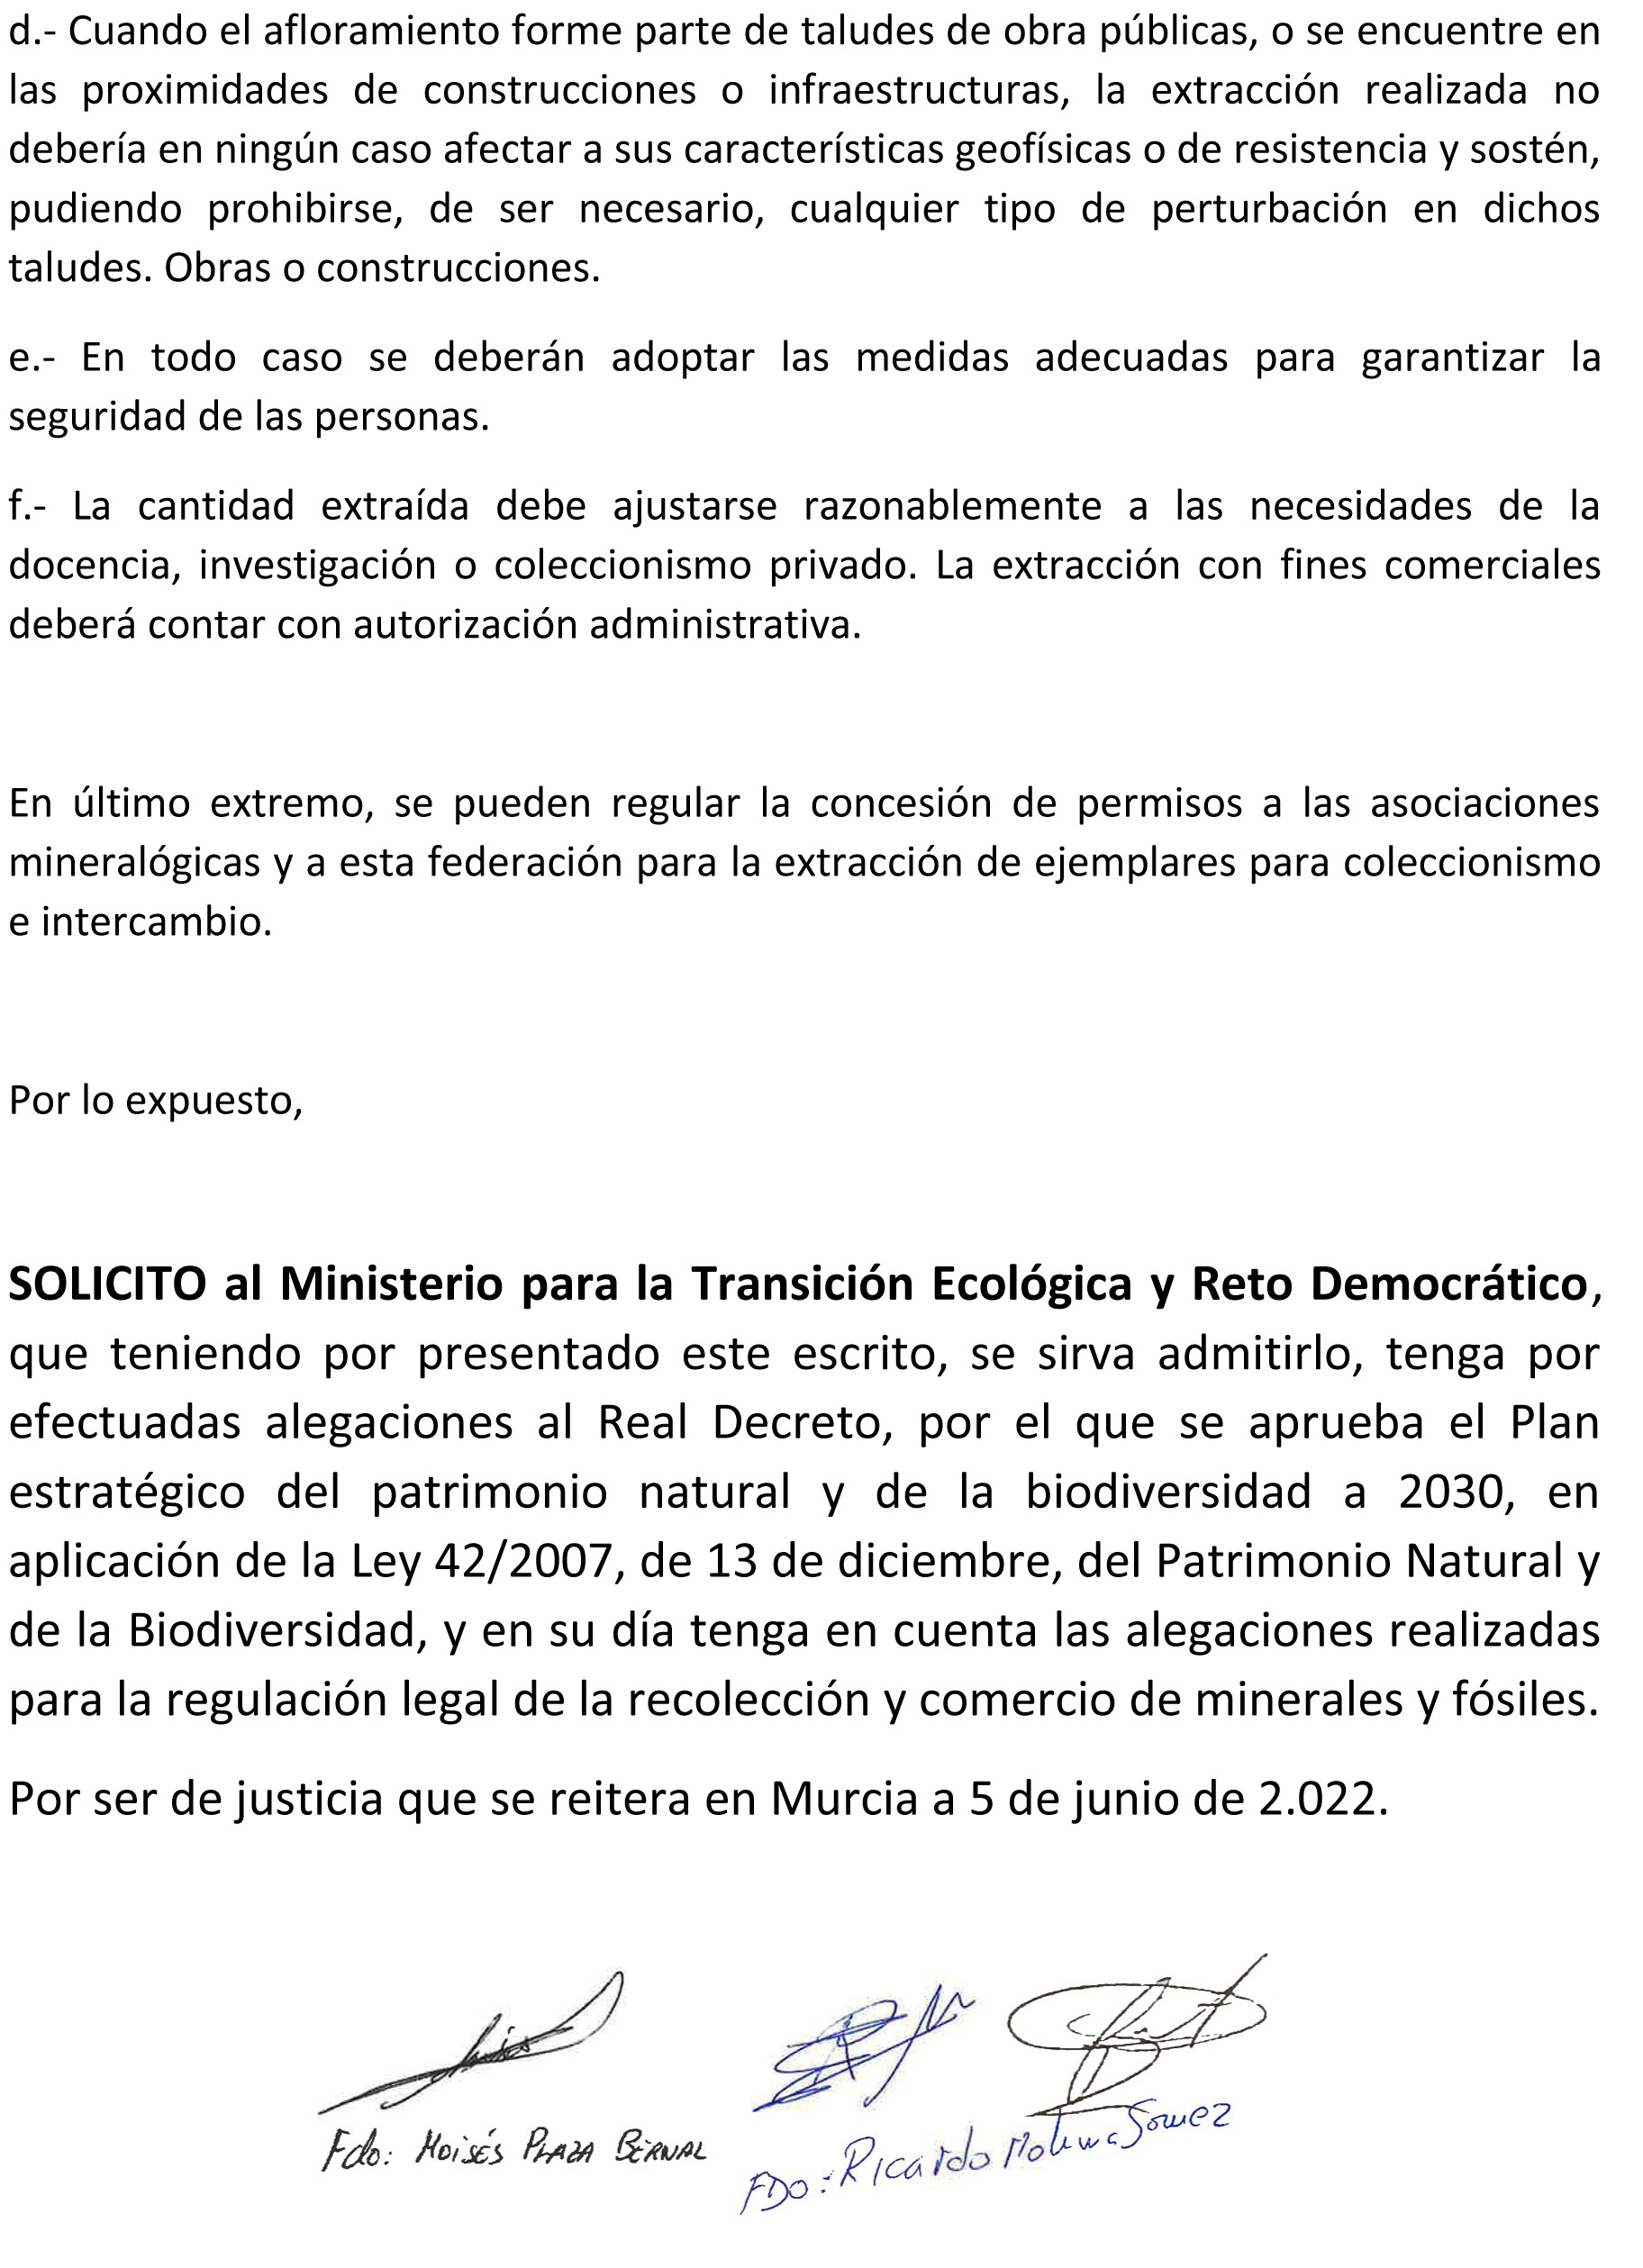 Alegaciones al Real Decreto, por el que se aprueba el Plan estratégico del patrimonio natural y de la biodiversidad a 2030, en aplicación de la Ley 42/2007, de 13 de diciembre, del Patrimonio Natural y de la Biodiversidad.
